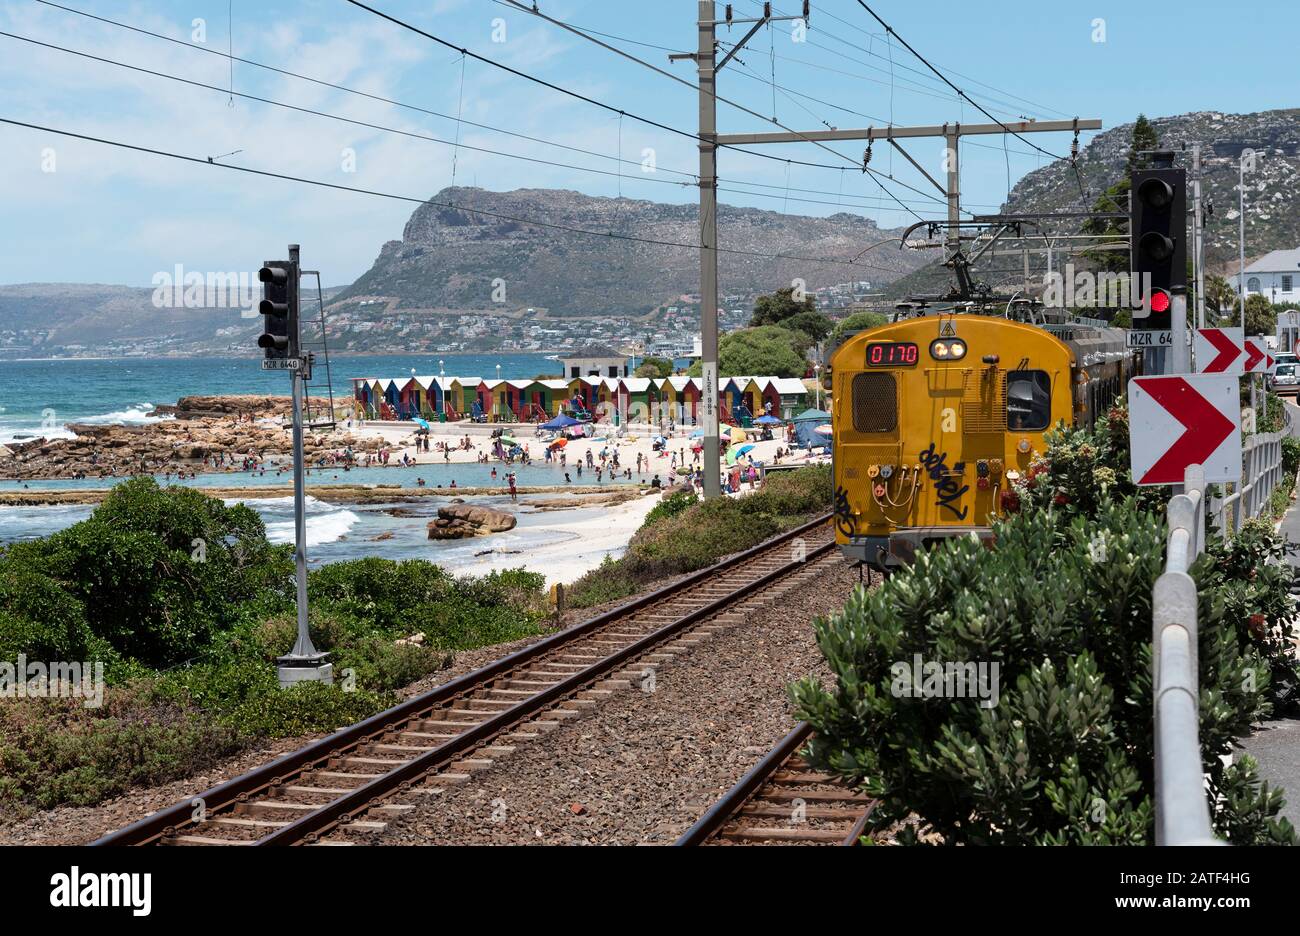 St. James, Kapstadt, Südafrika. Dezember 2019. St. James, ein beliebter Küstenort und bunte Strandhütten, die von einem Zugdienst von Kapstadt aus bedient werden Stockfoto